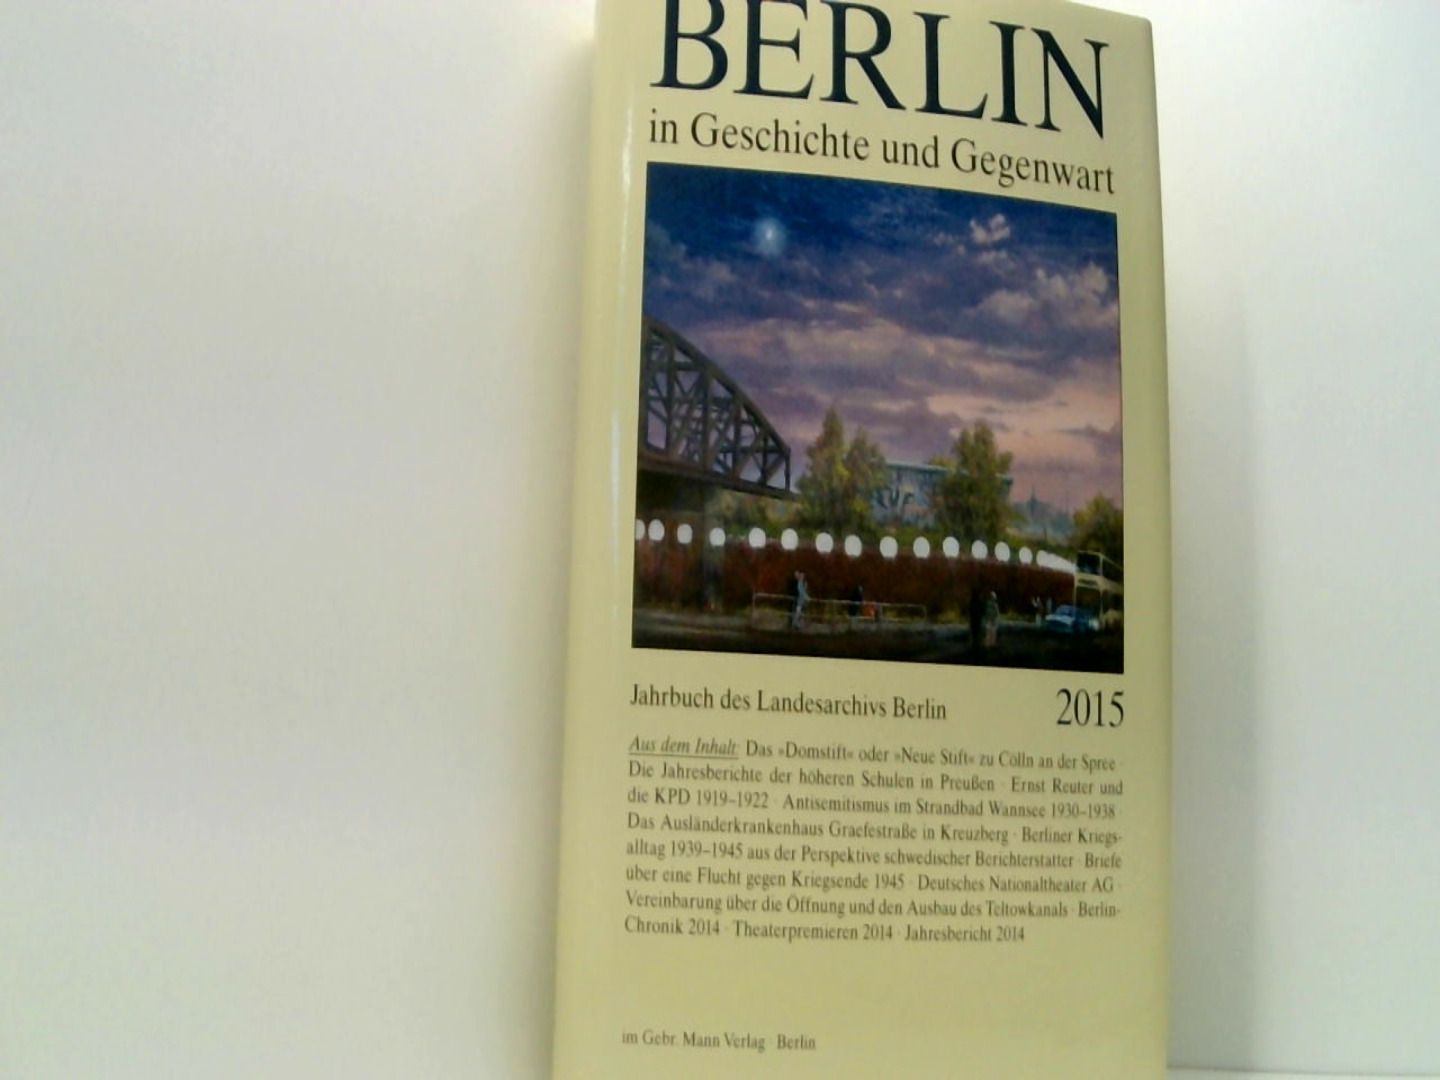 Berlin in Geschichte und Gegenwart: Jahrbuch des Landesarchivs Berlin 2015 - Breunig, Werner und Uwe Schaper